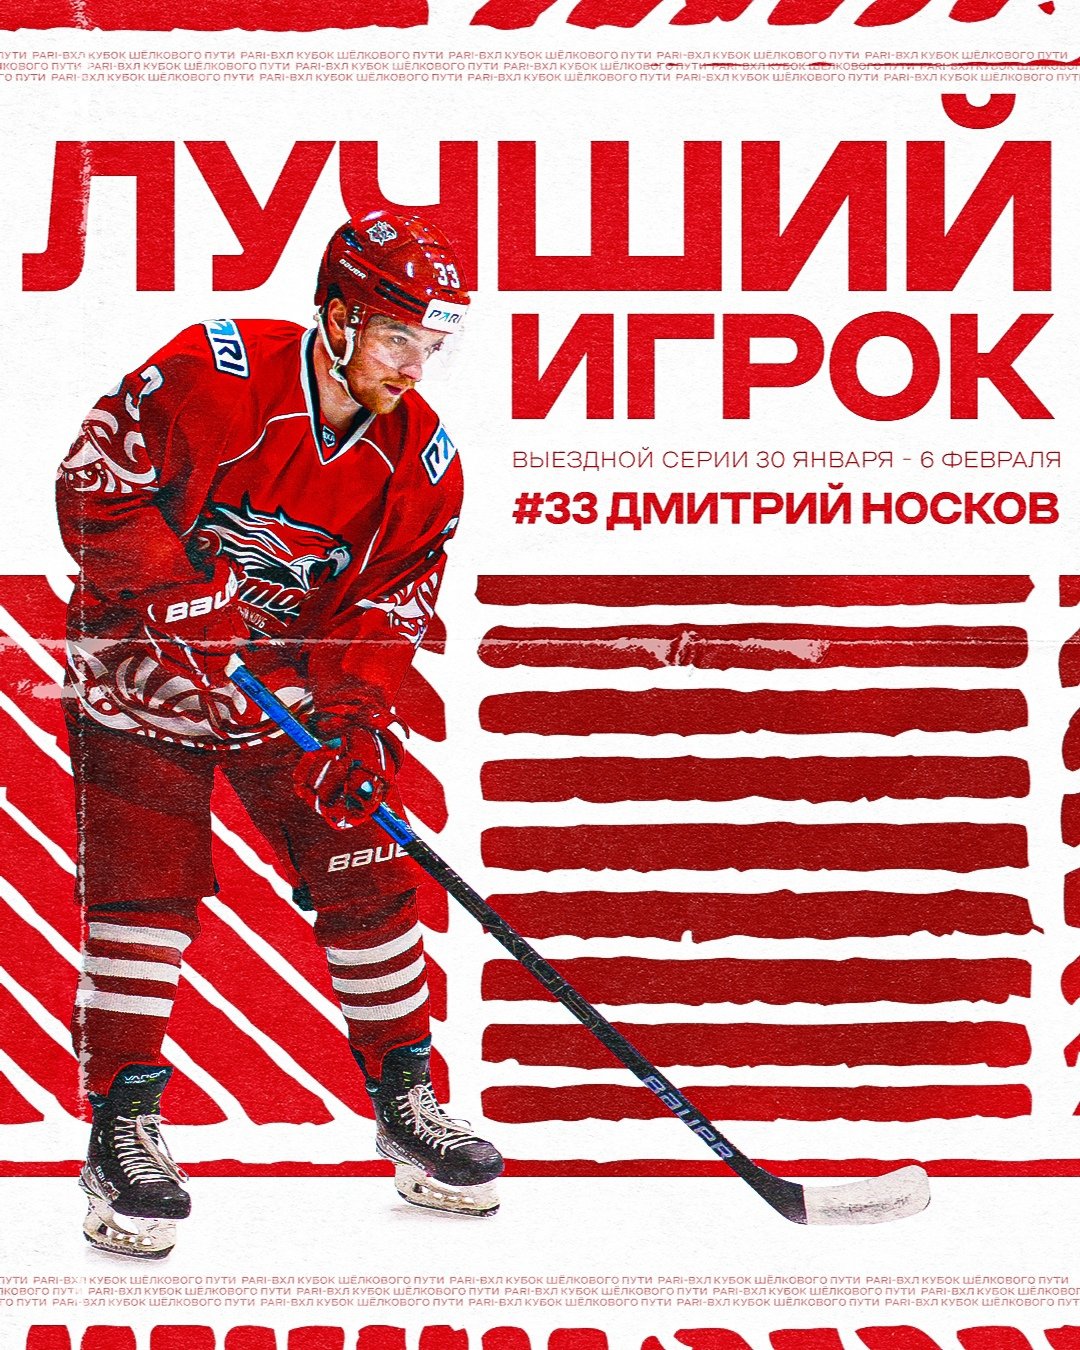 Дмитрий Носков - лучший игрок выездной серии